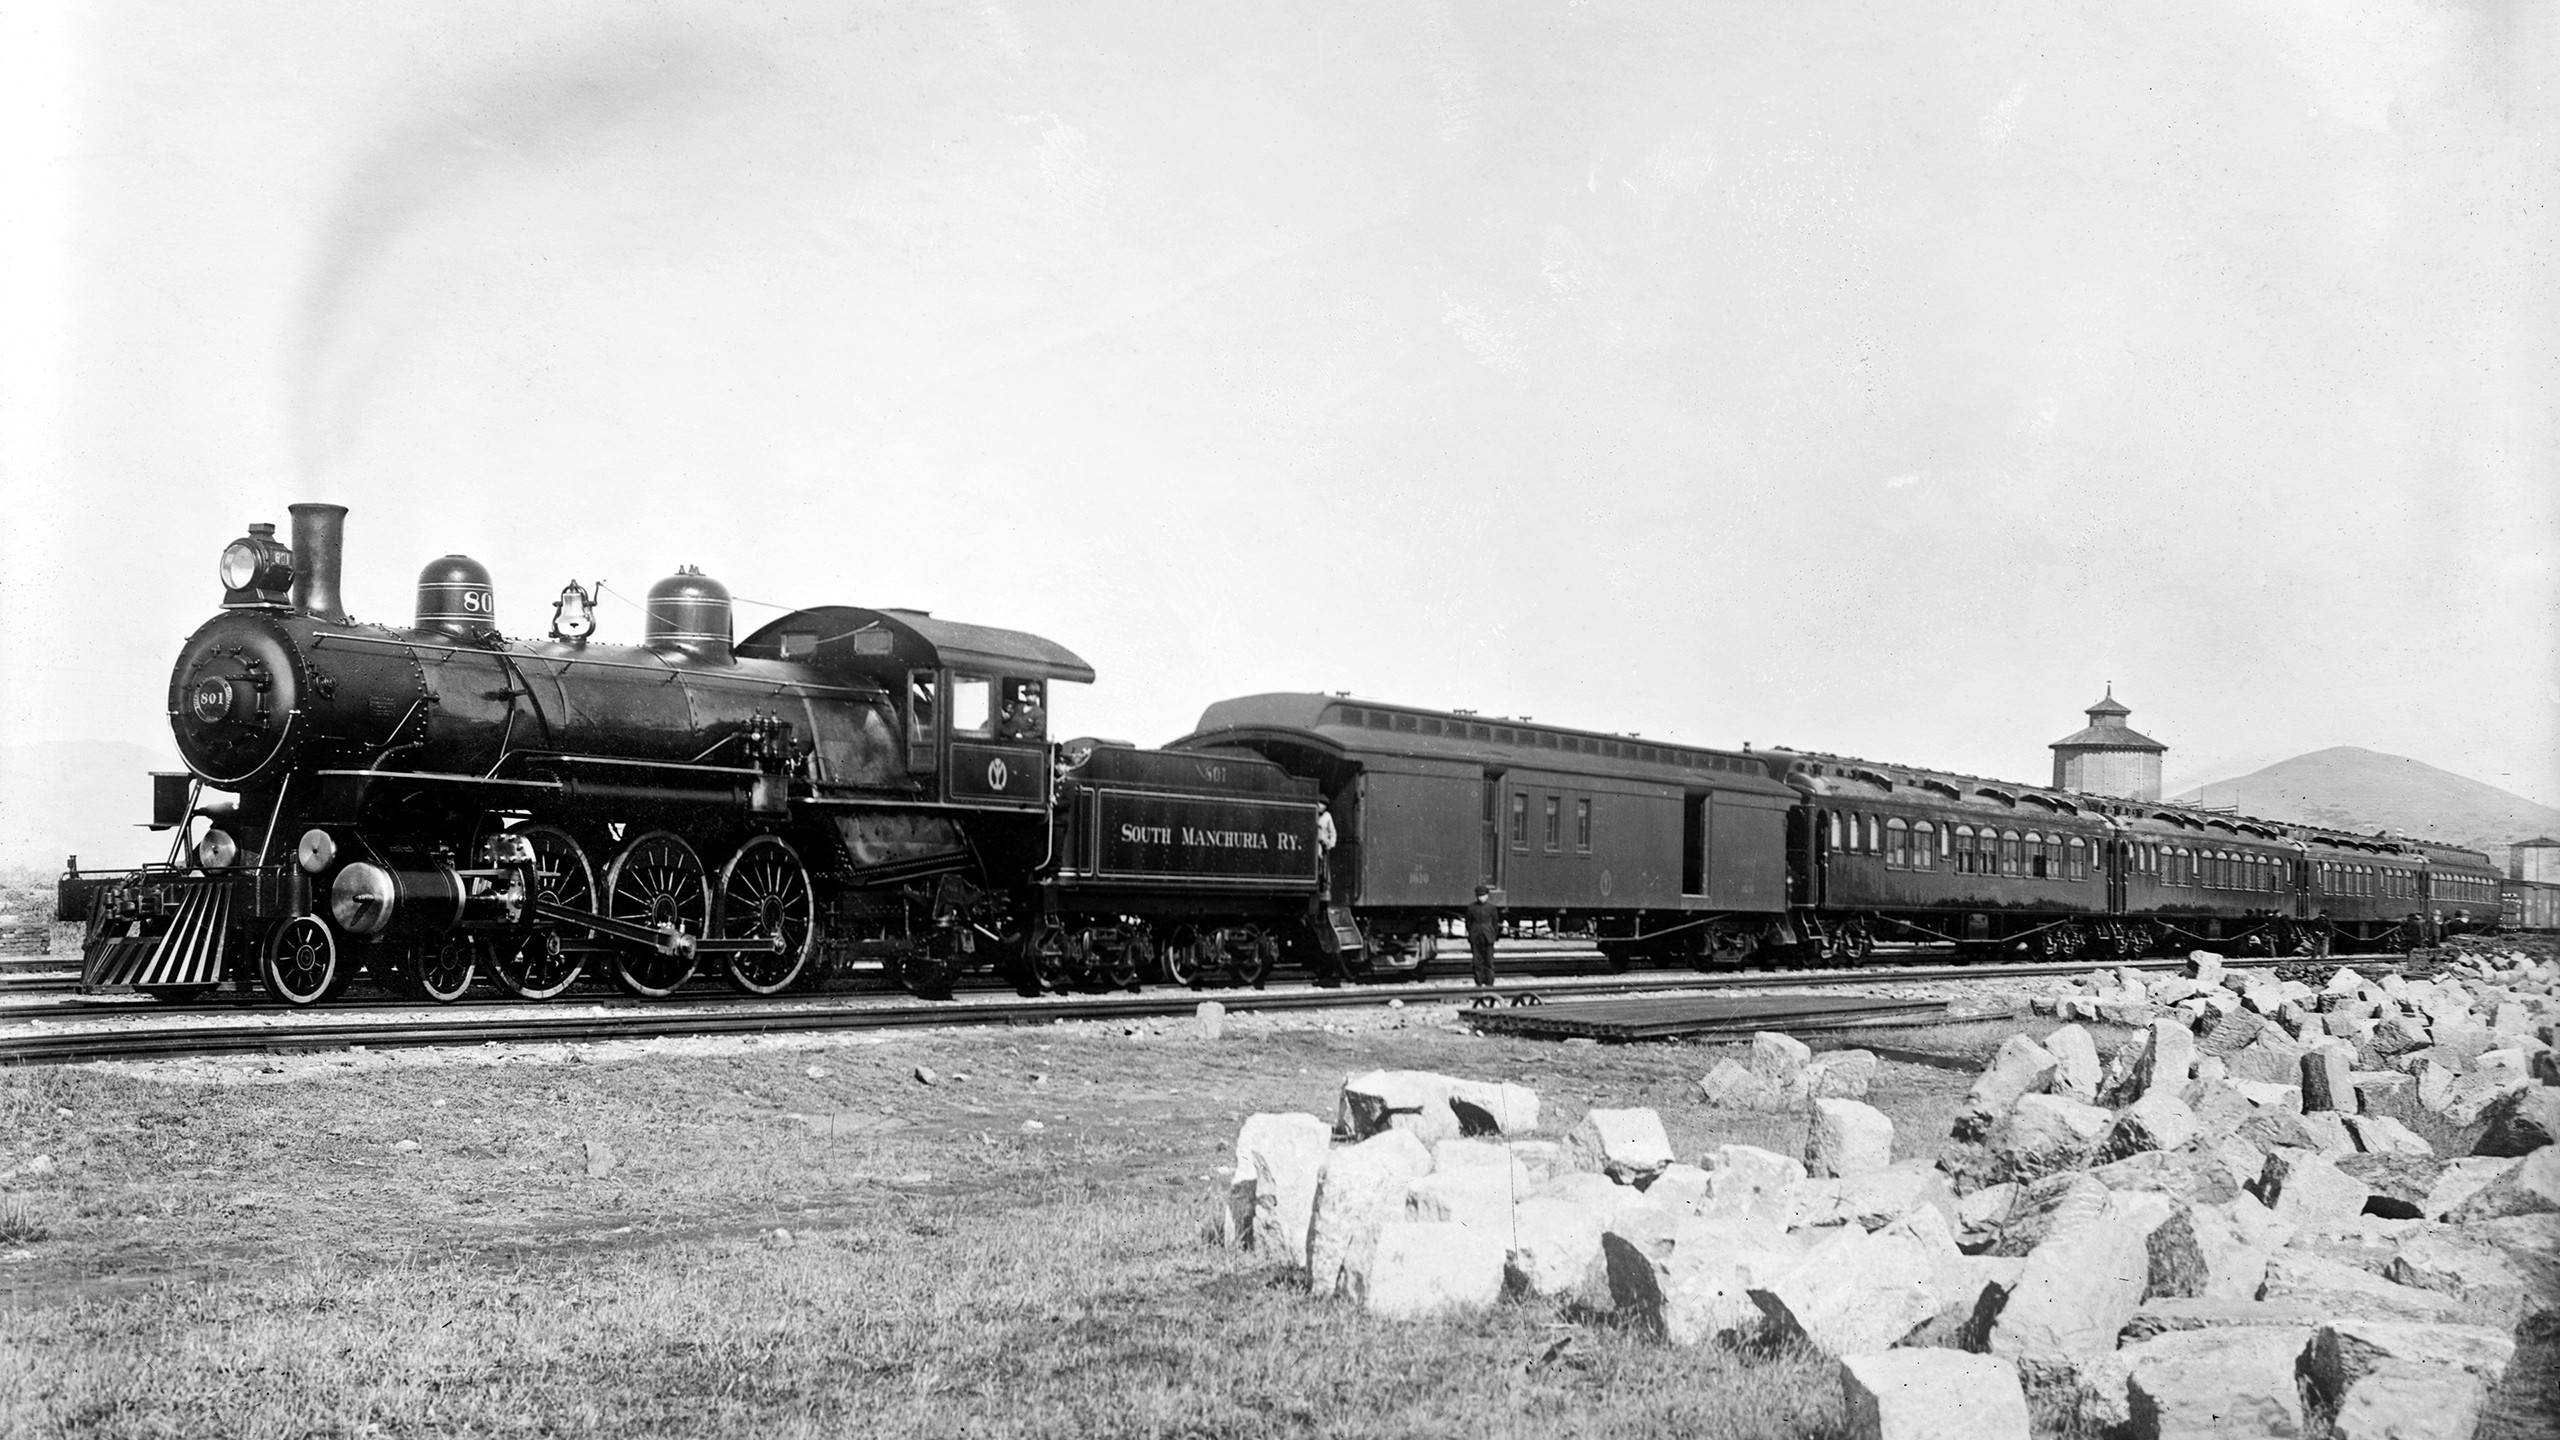 General 2560x1440 train steam locomotive monochrome vintage Steam Train vehicle